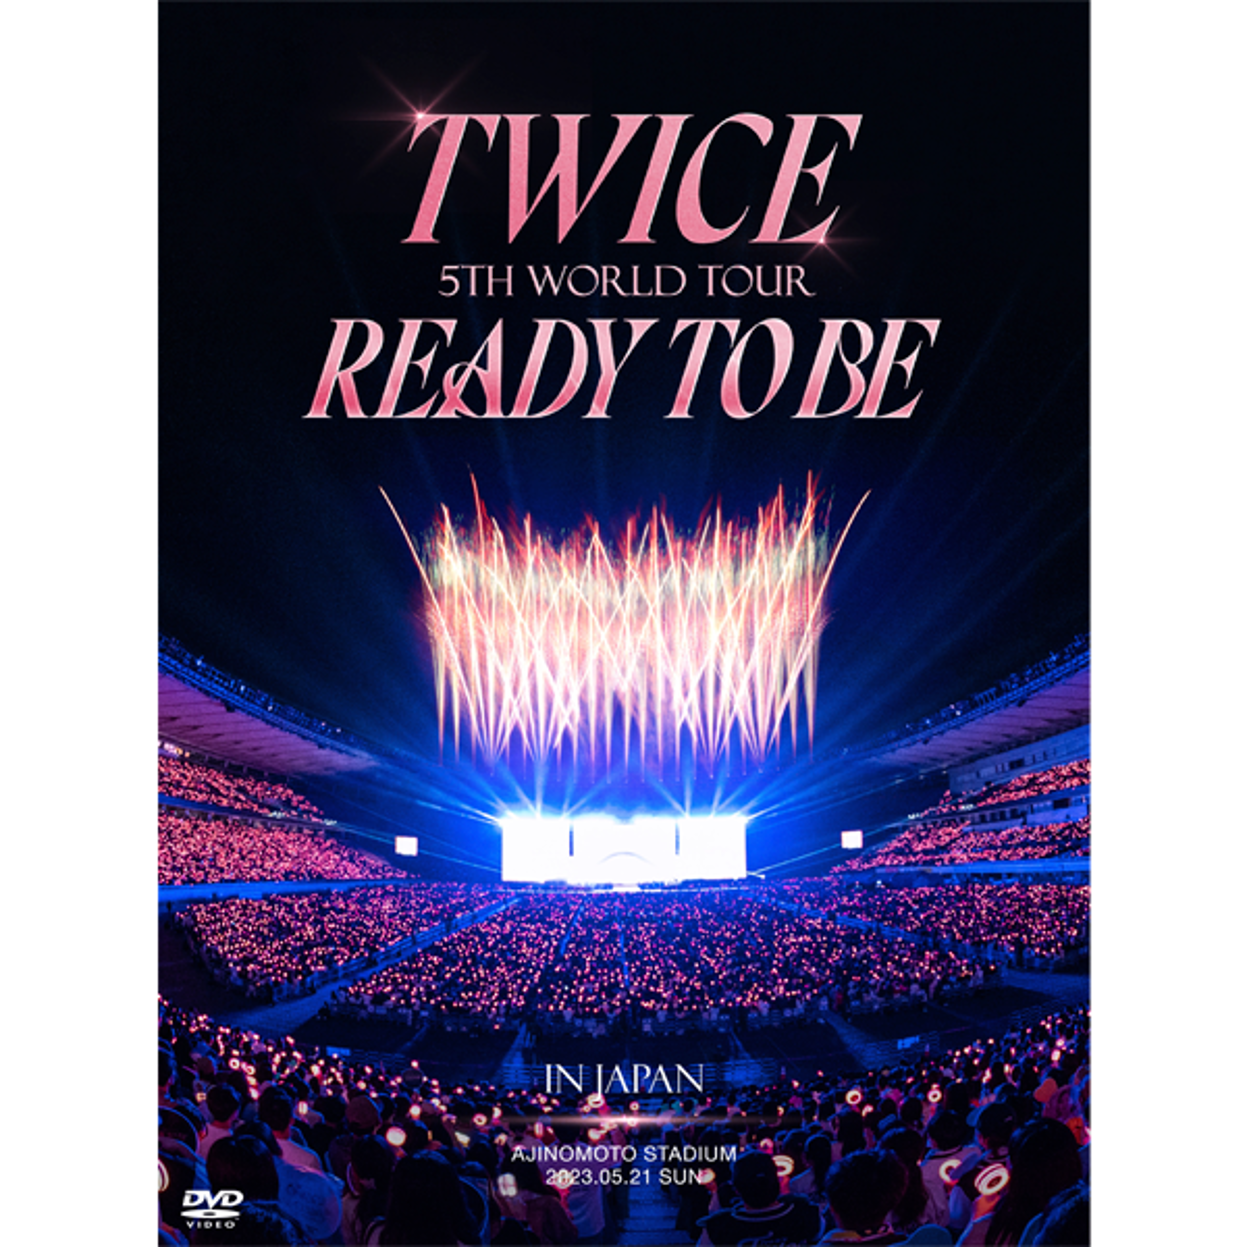 트와이스 (TWICE) - 5TH WORLD TOUR [READY TO BE] in JAPAN (BD 한정반)